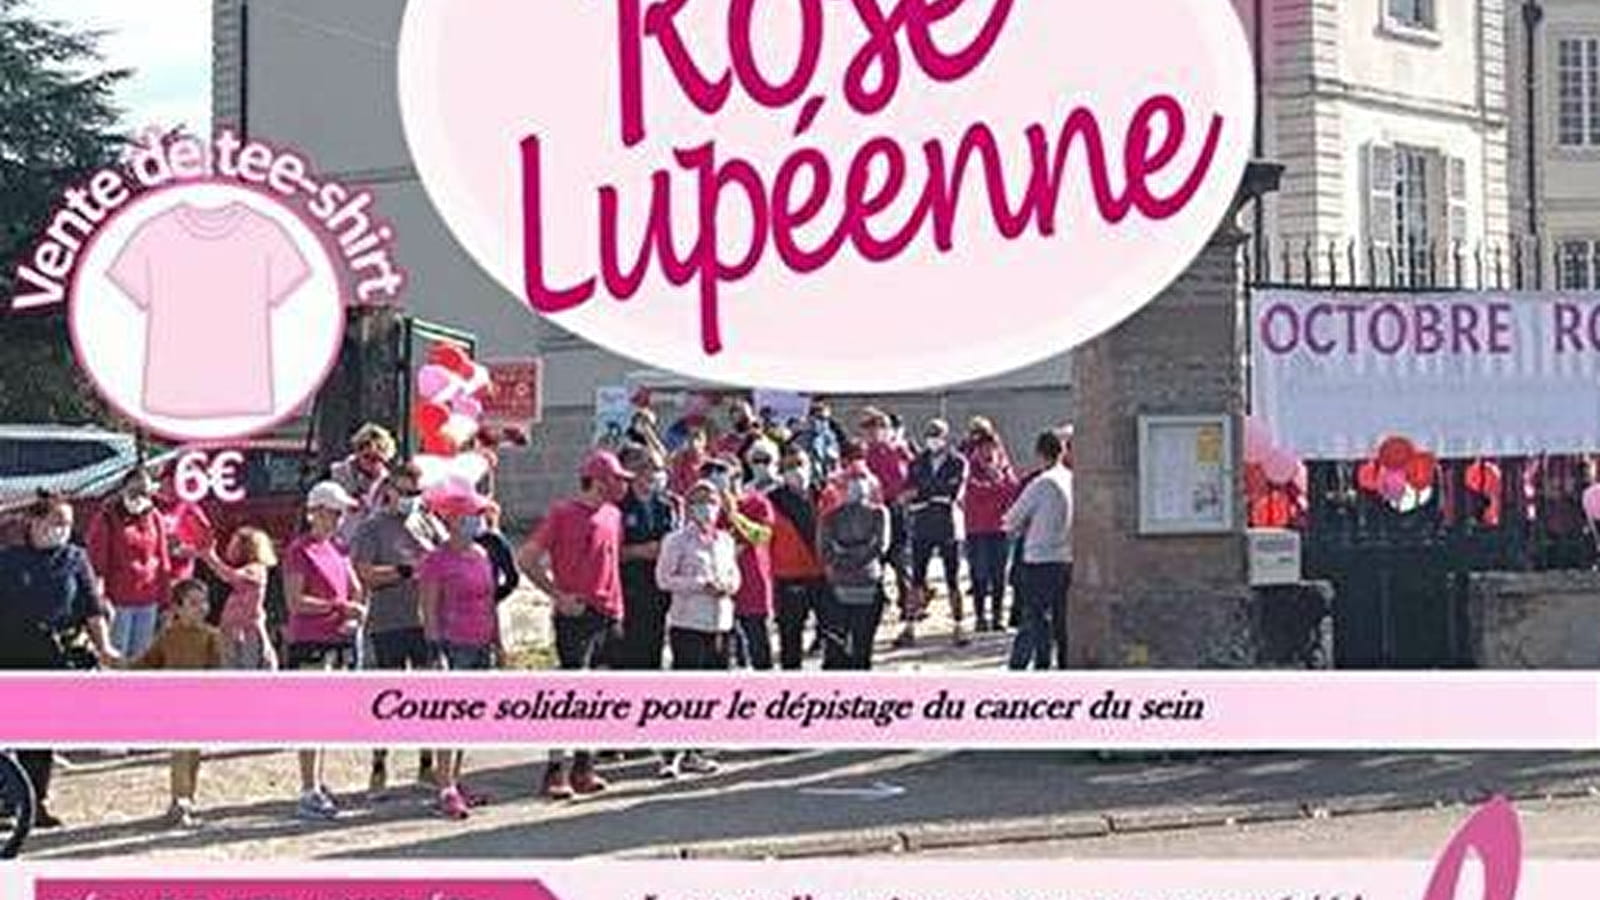 Course solidaire : La Rose Lupéenne